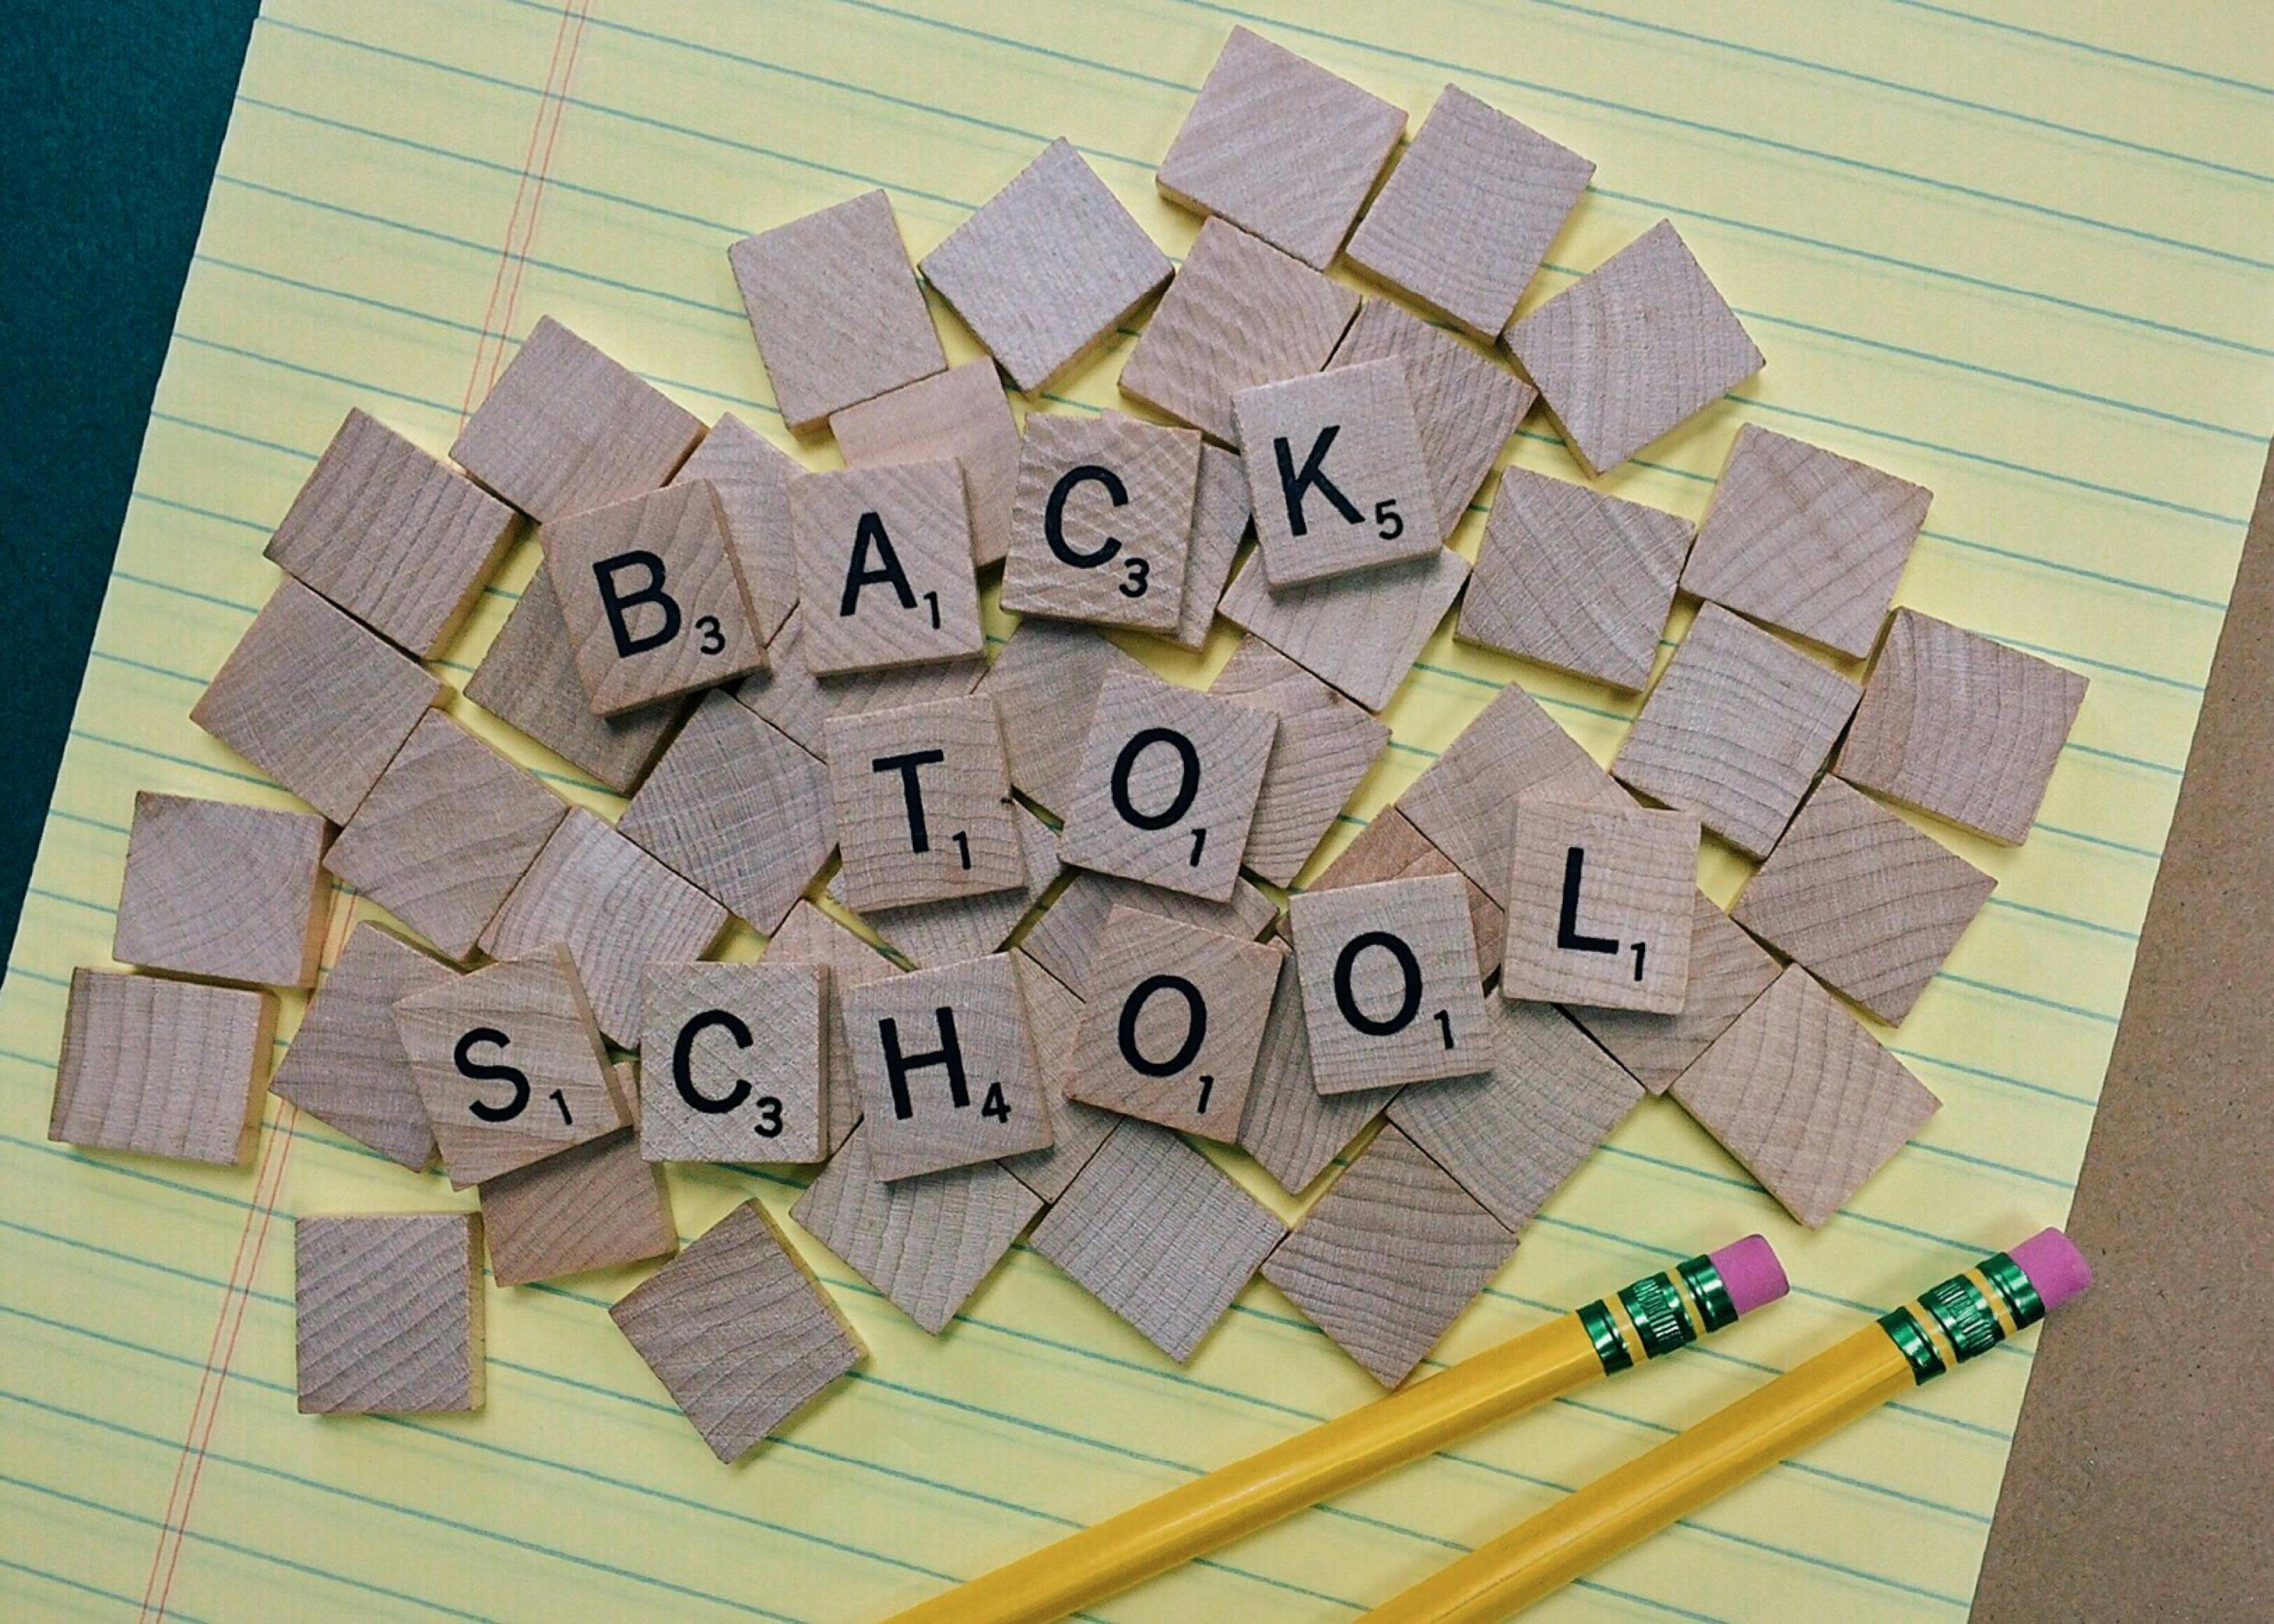 Résultat de recherche d'images pour "back to school"